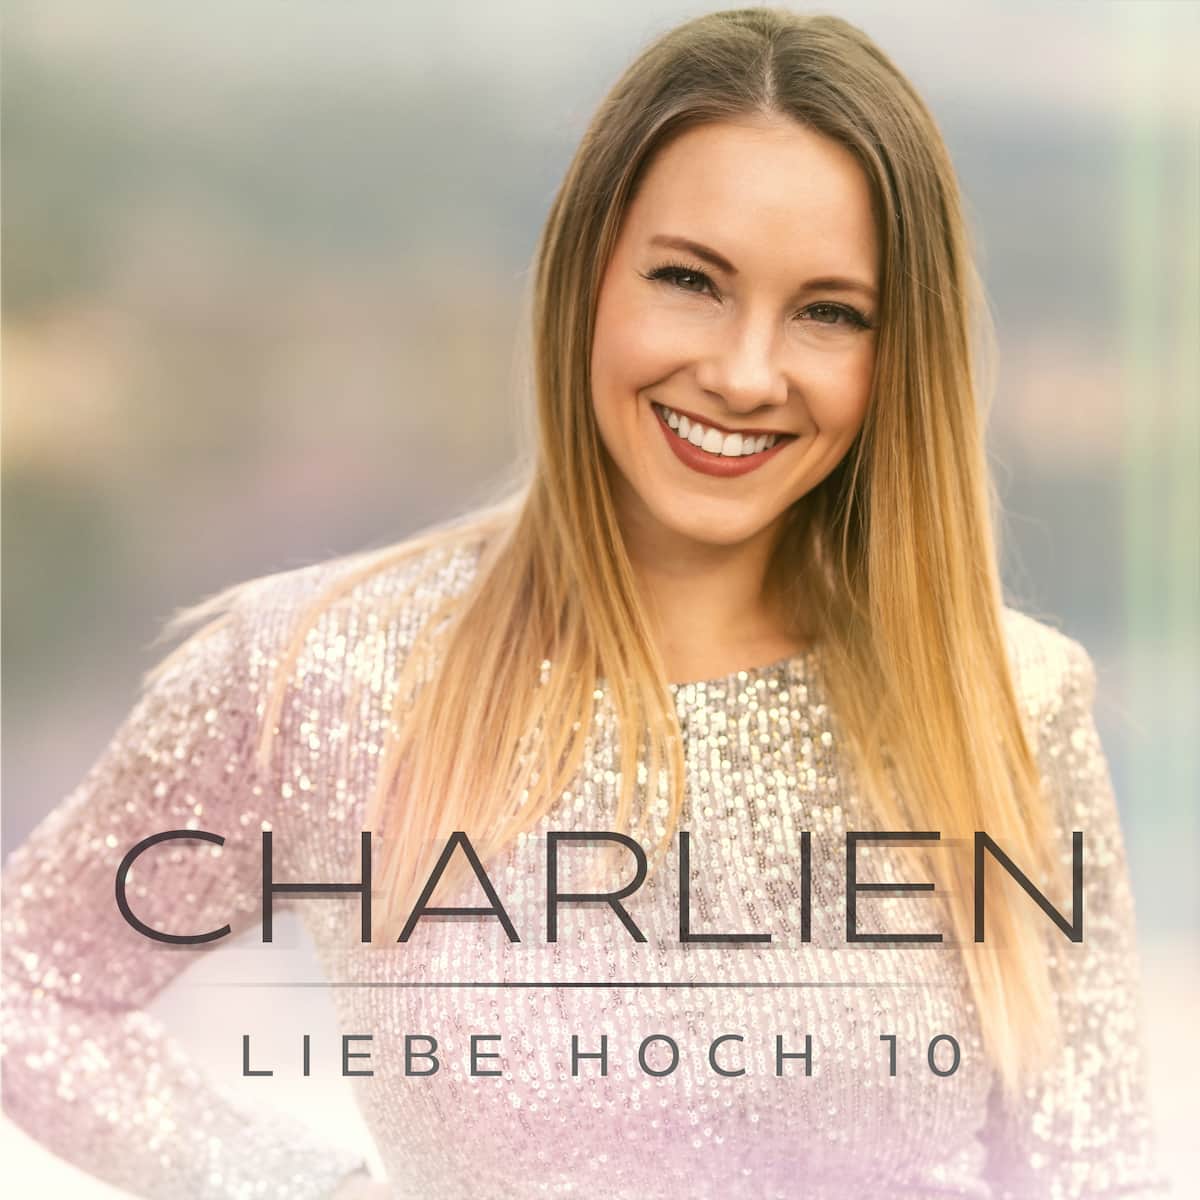 Charlien mit dem Schlager Liebe hoch 10 in den Salsango Schlager-Charts - hier Cover-Motiv der neuen Charlien-Single